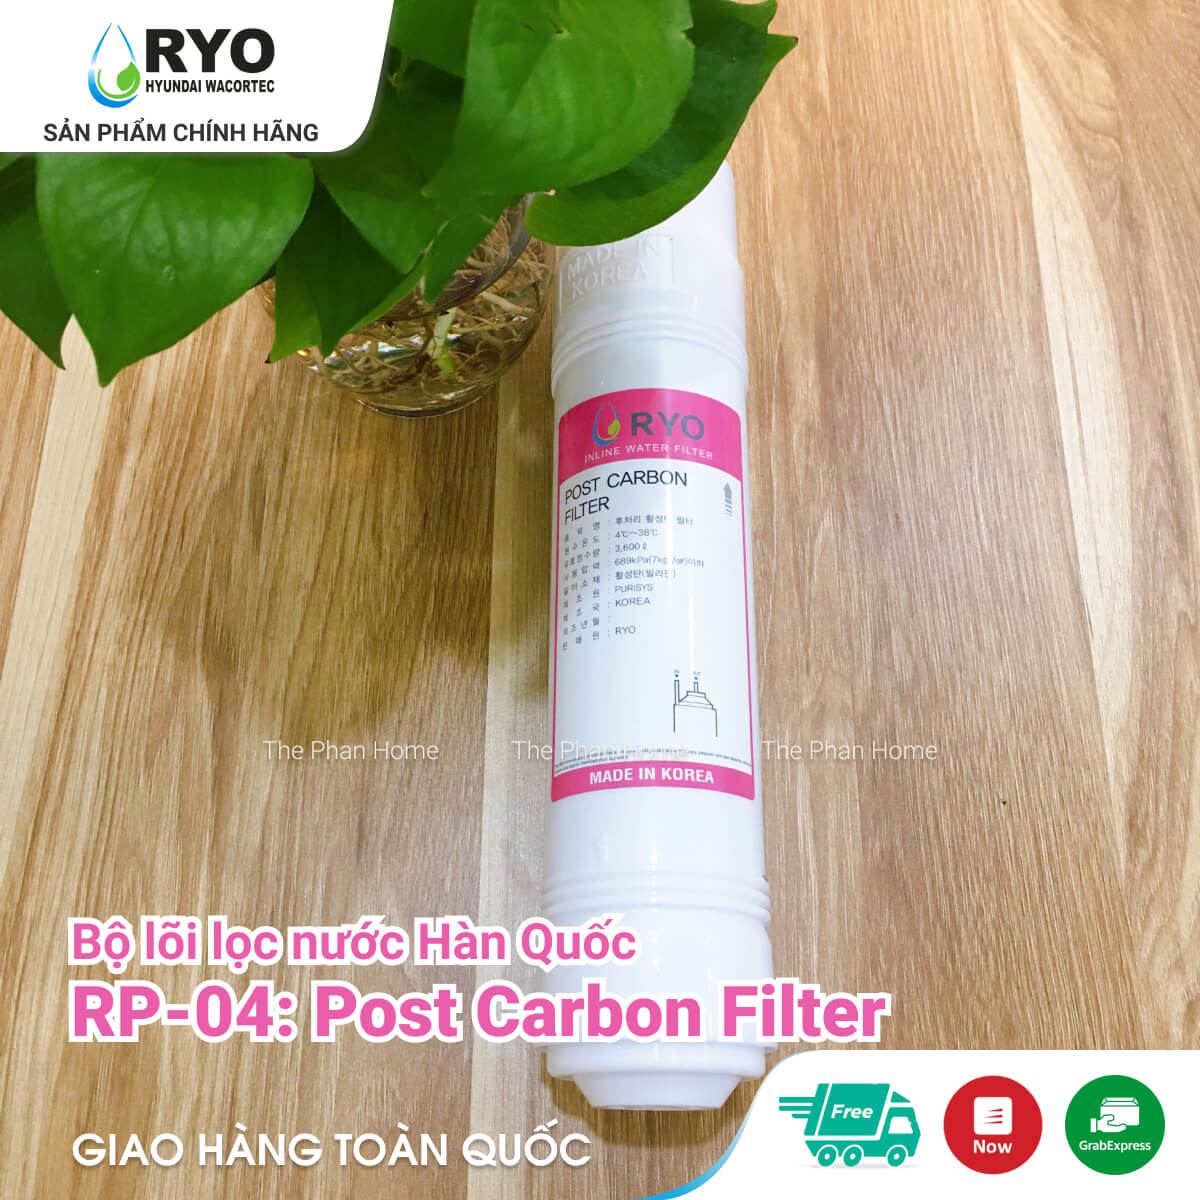 Lõi Lọc Nước RYO RP-04 - Post Carbon Filter - Nhập khẩu Hàn Quốc, dùng cho mọi dòng Máy Lọc Nước UF (như RYO Hyundai, KoriHome, Canzy, CNC, Humero...)